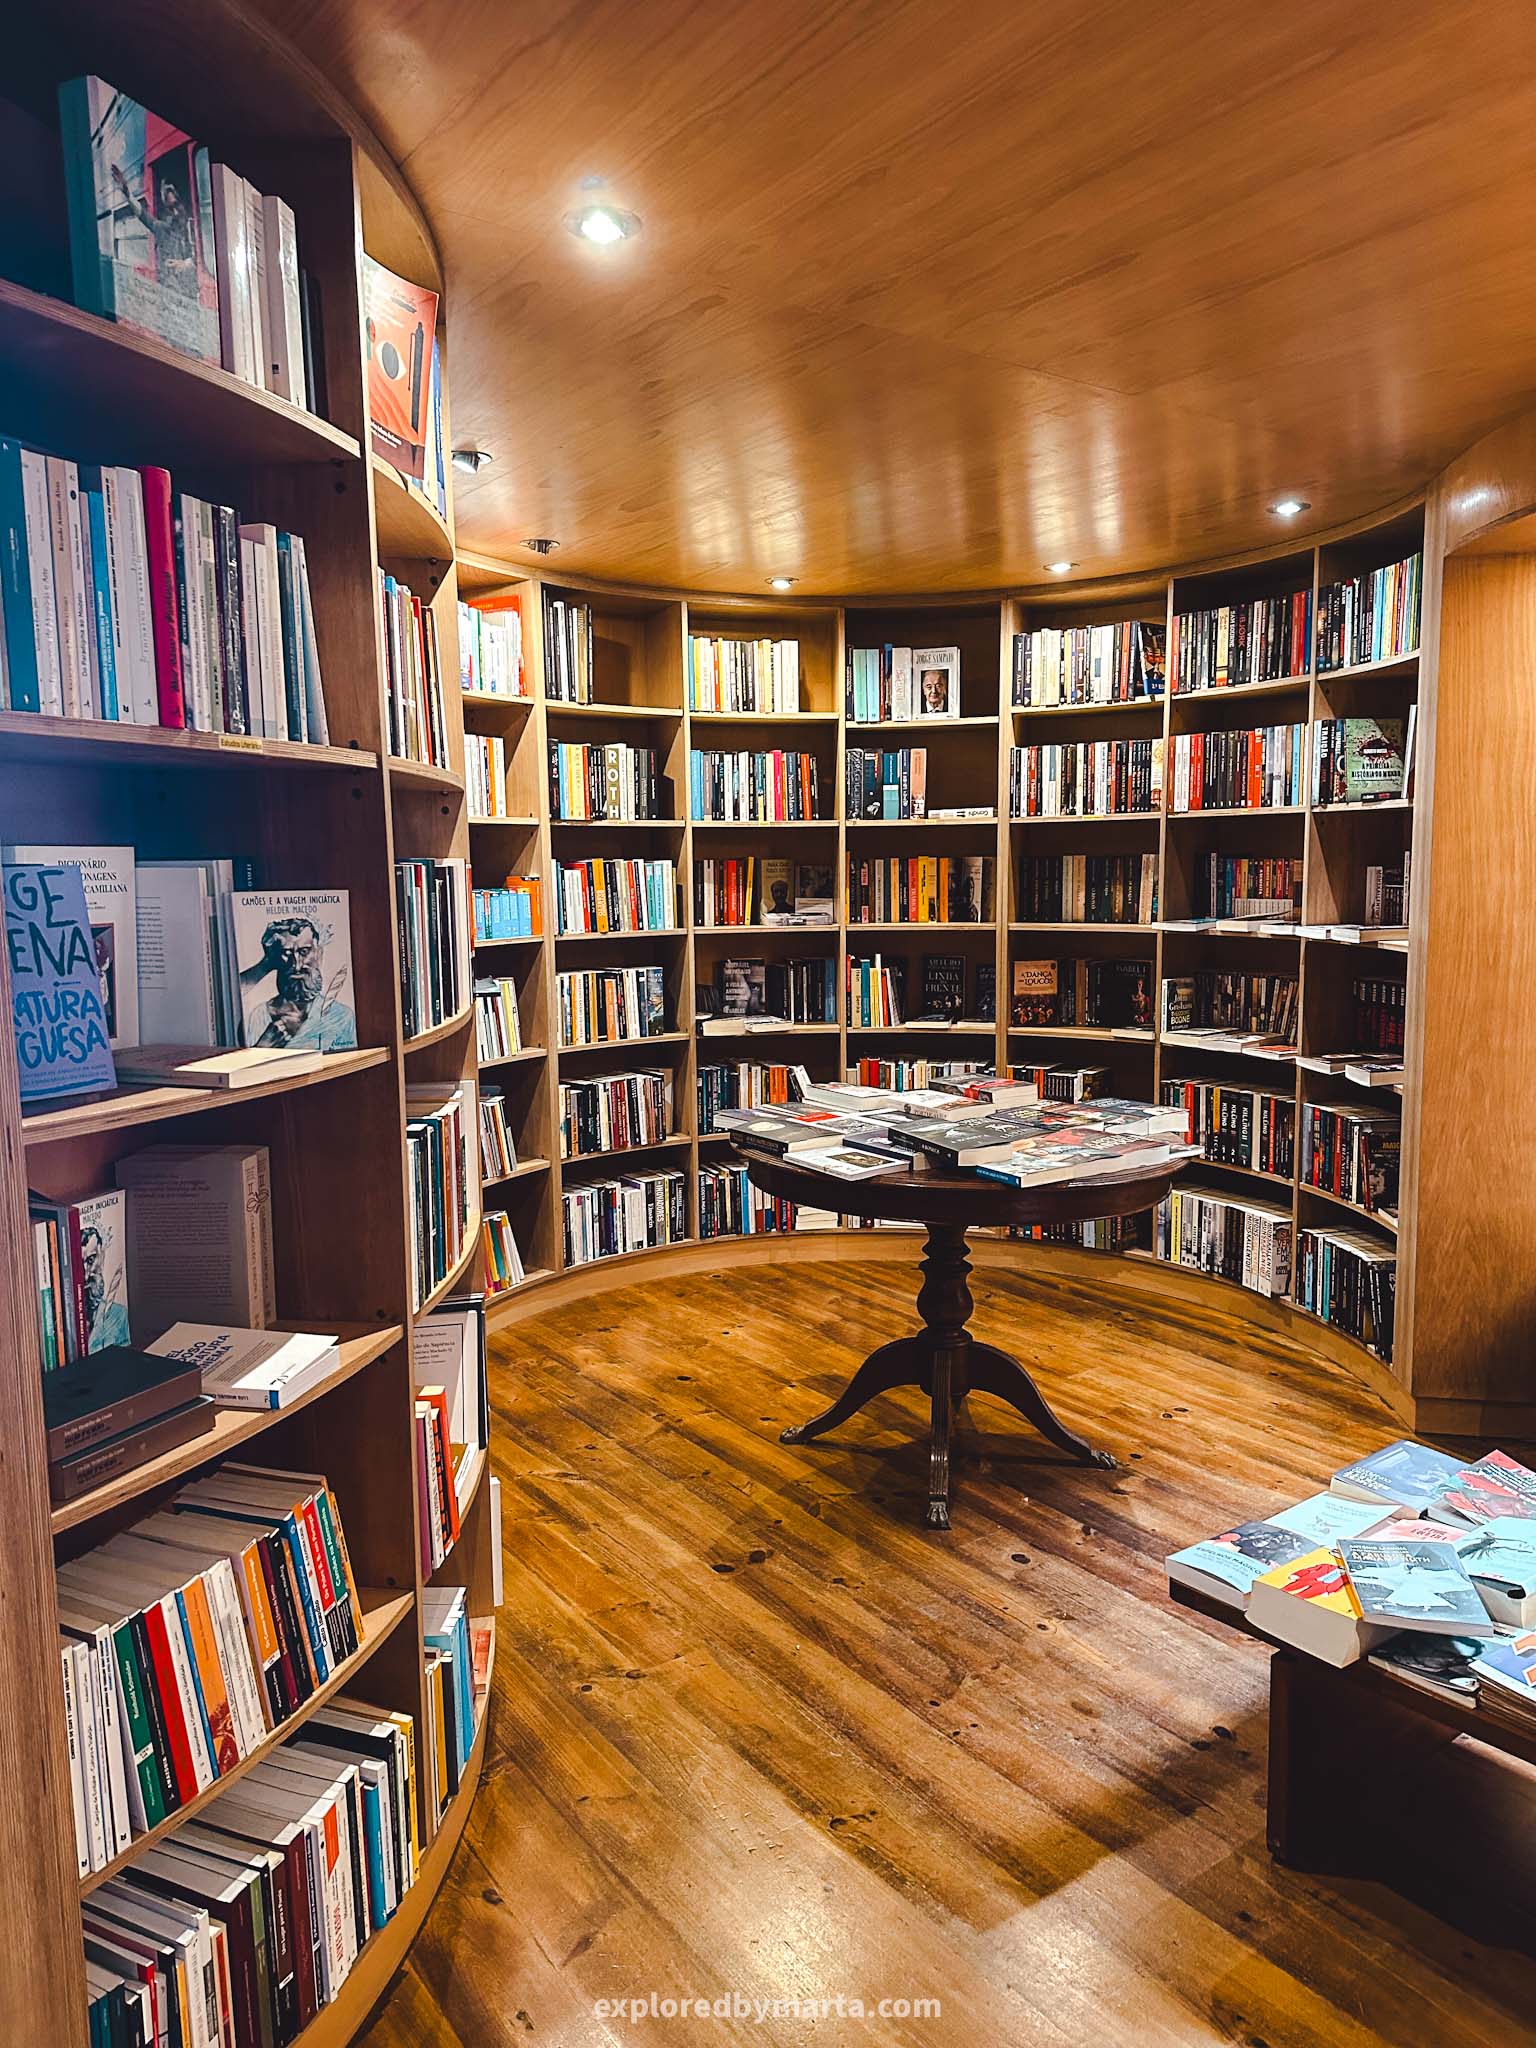 Óbidos, Portugal things to do-Livraria de São Tiago bookshop inside Igreja de São Tiago church